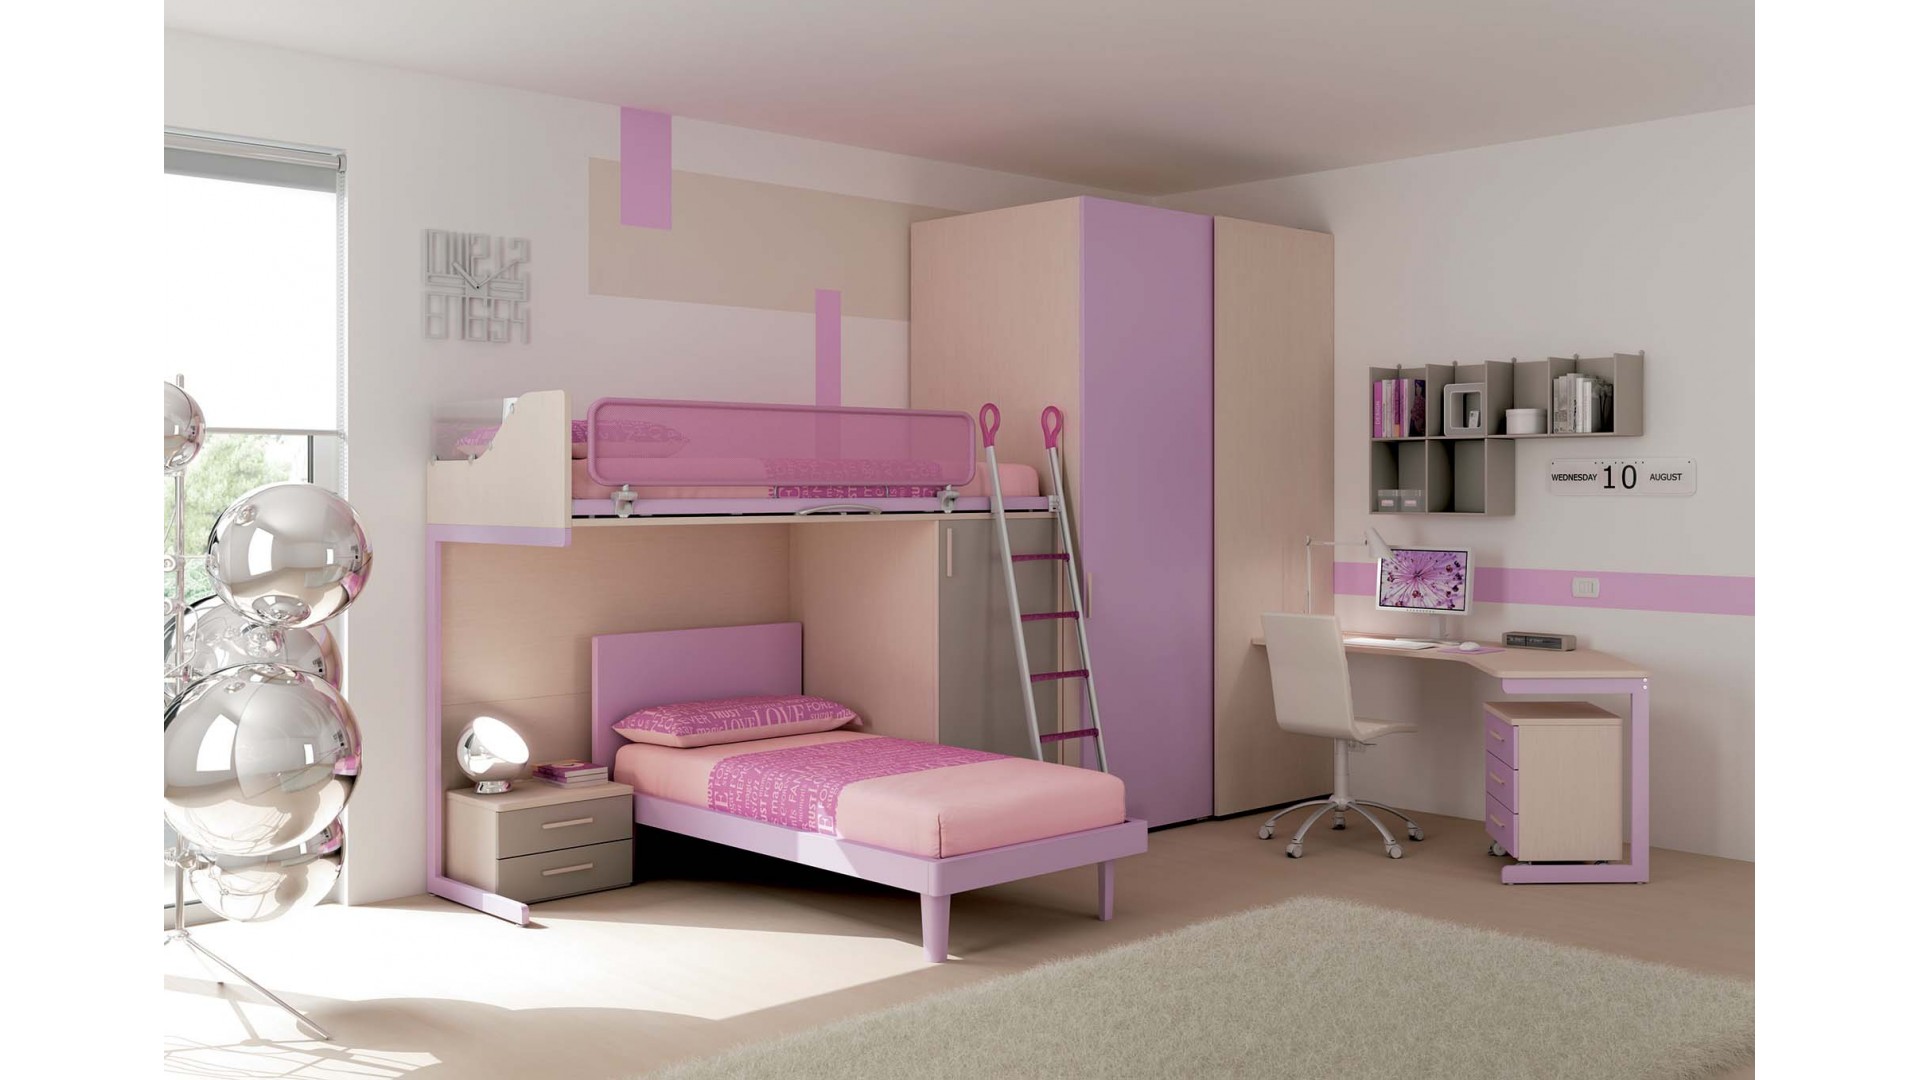 Chambre enfant PERSONNALISABLE KS28 lits superposés en mezzanine - MORETTI COMPACT